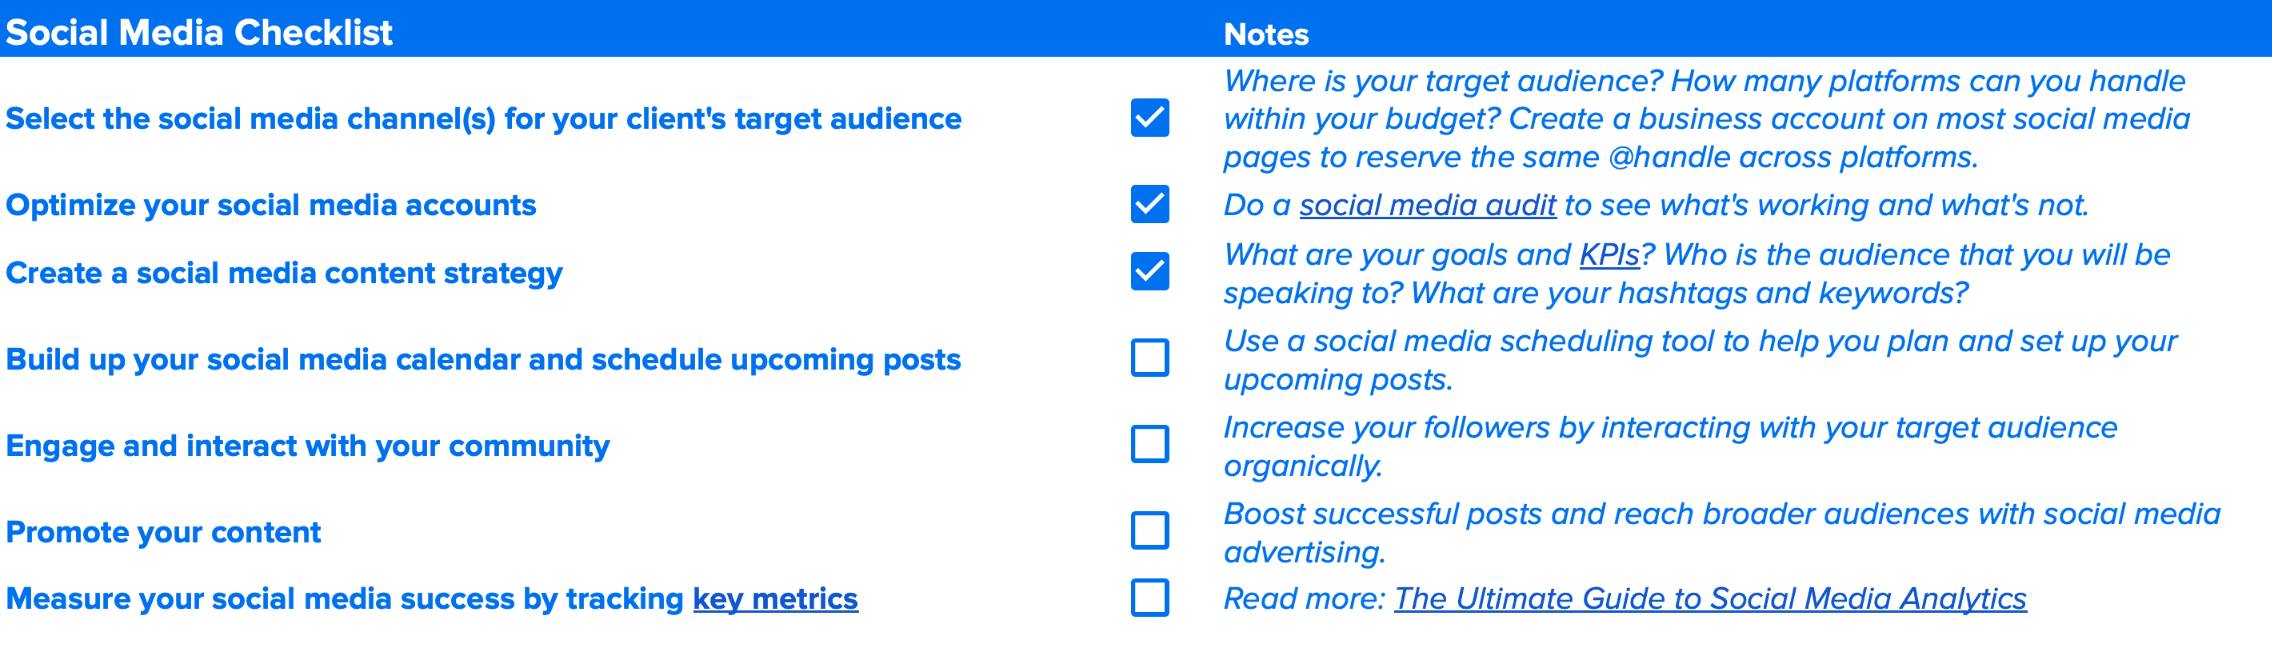 social media marketing launch checklist